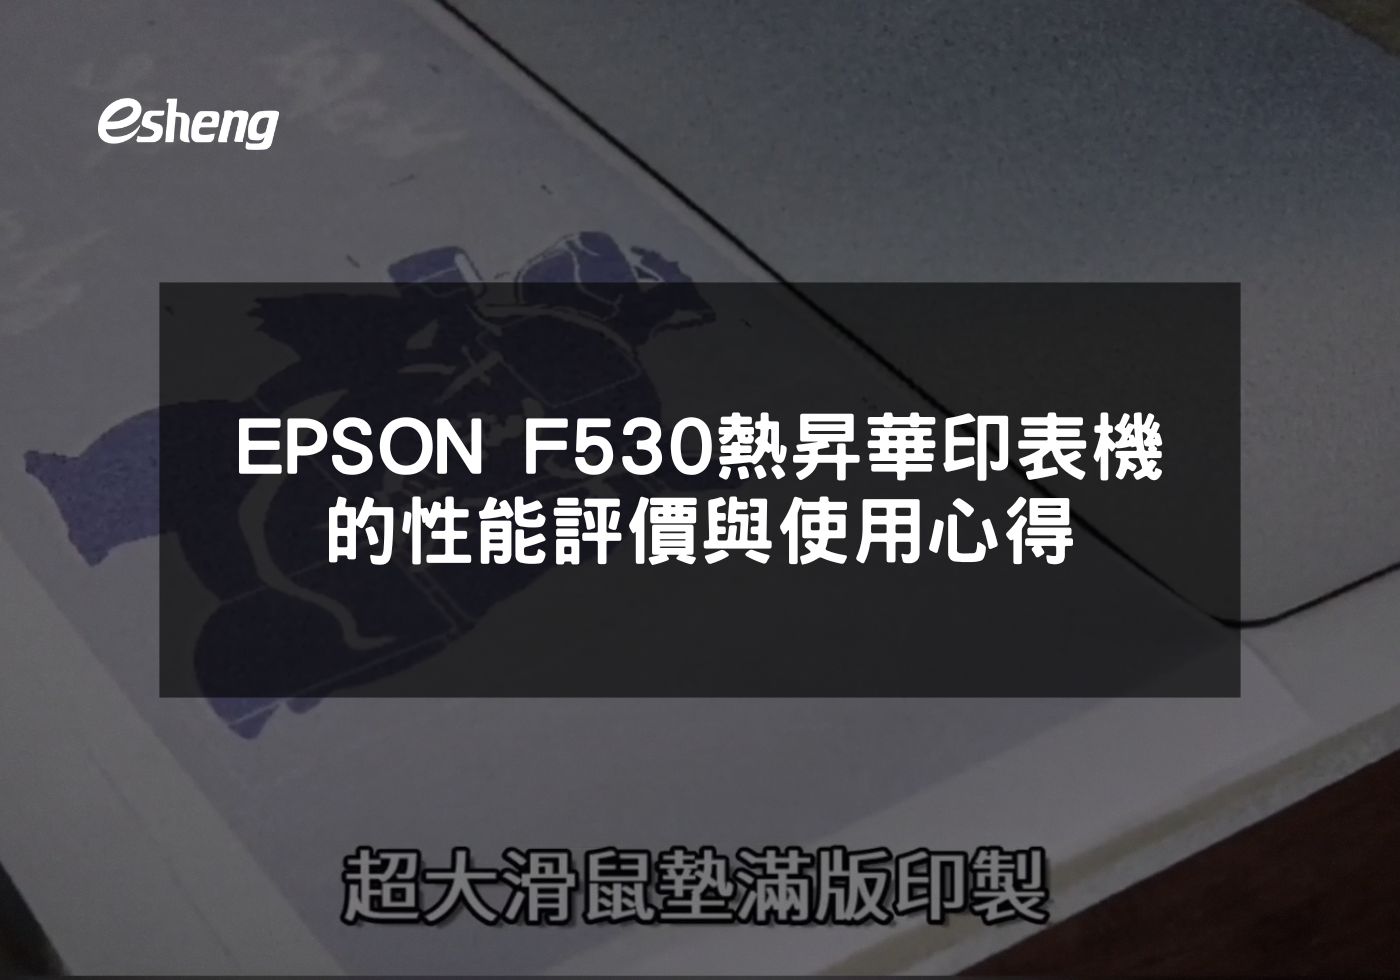 EPSON F530專業級熱昇華印表機的高質量印製解決方案